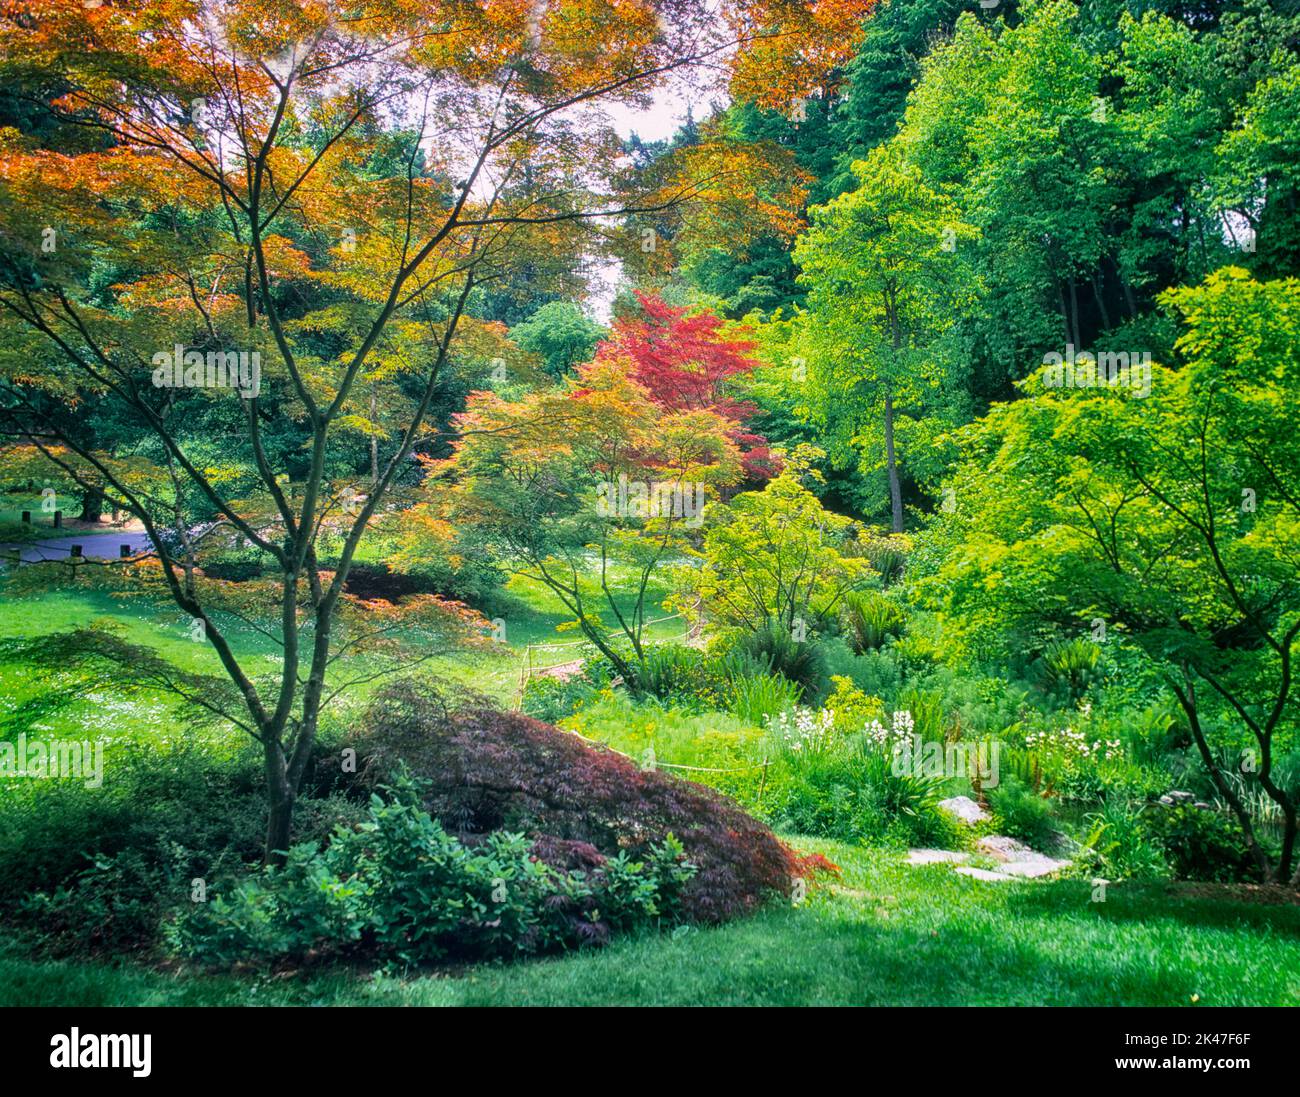 Eine Vielzahl von japanischen Ahornbäumen im Frühjahr. Washington Park Arboretum, Seattle, Washington Stockfoto